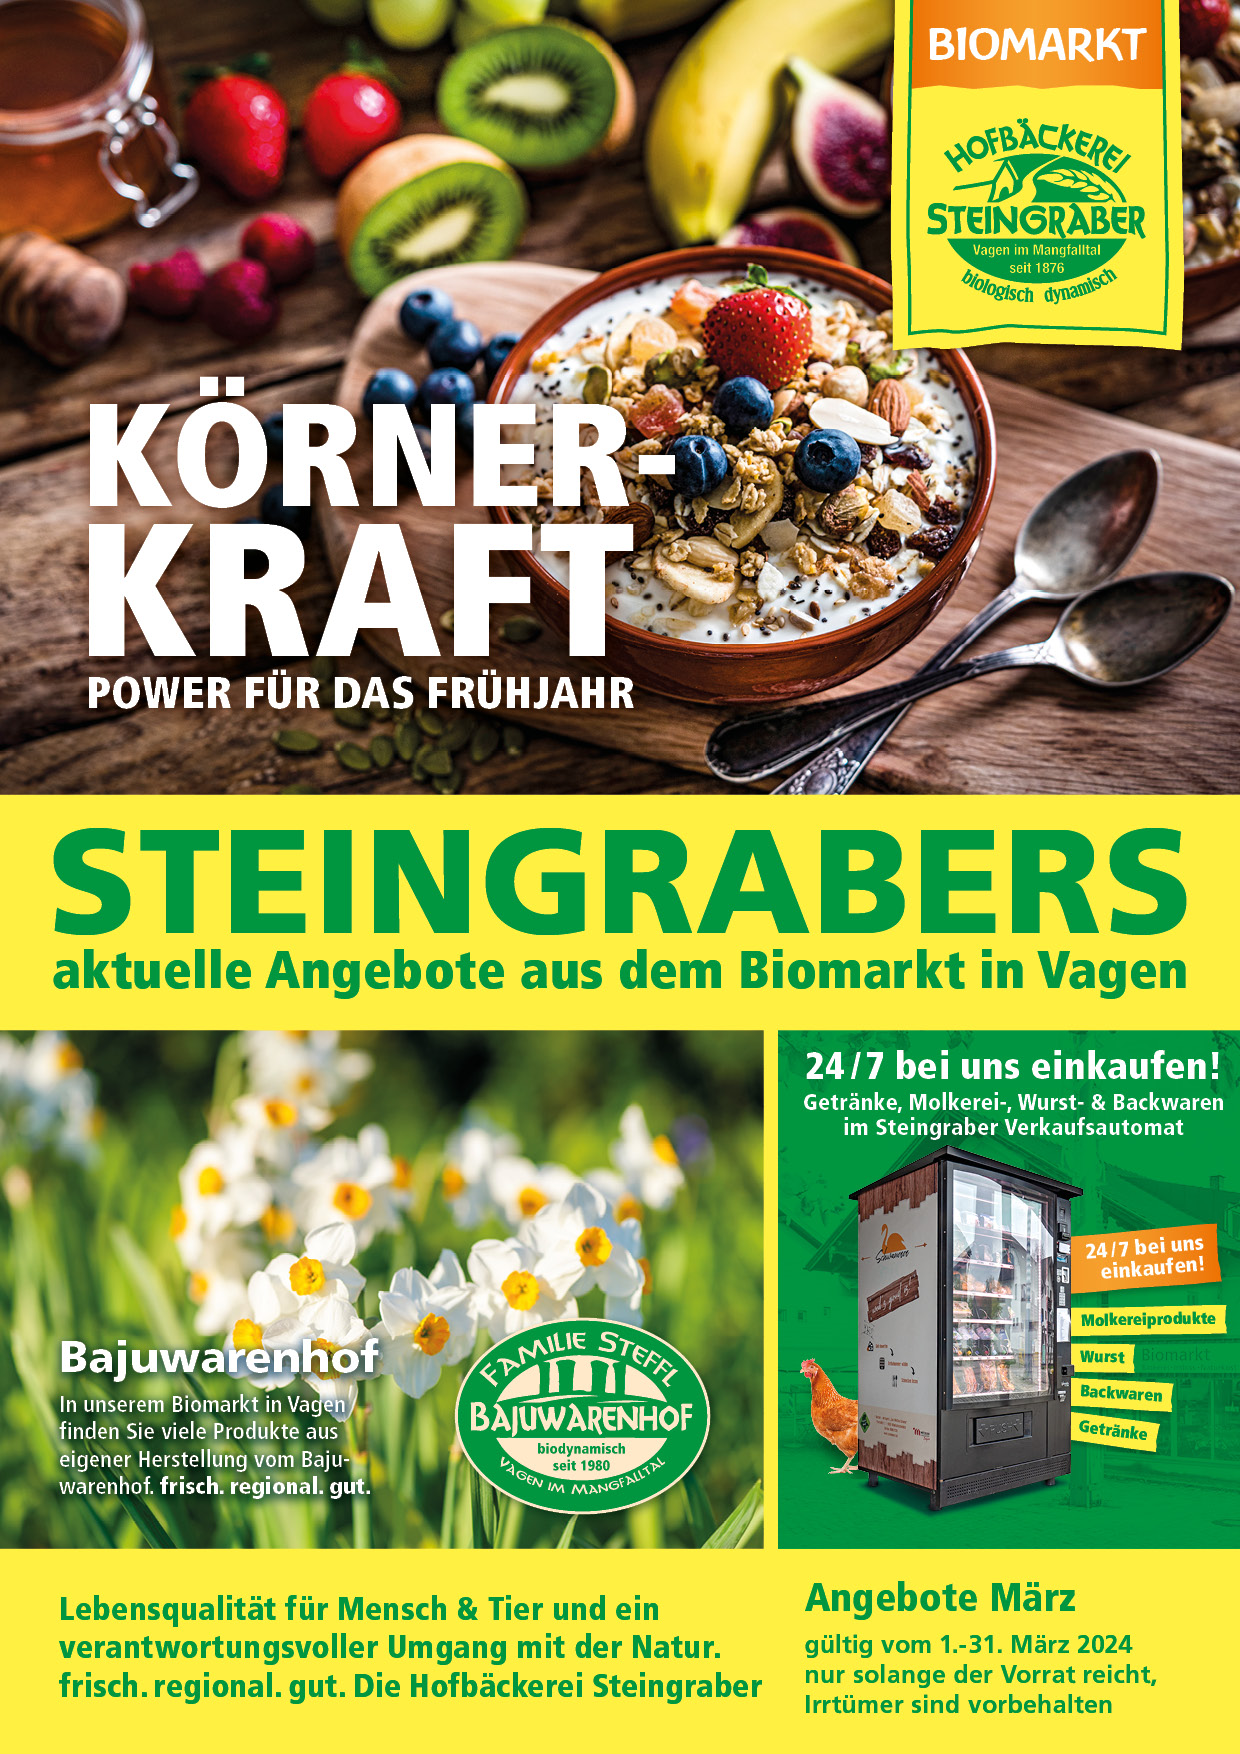 Steingraber Angebot A4 Maerz 2024 1